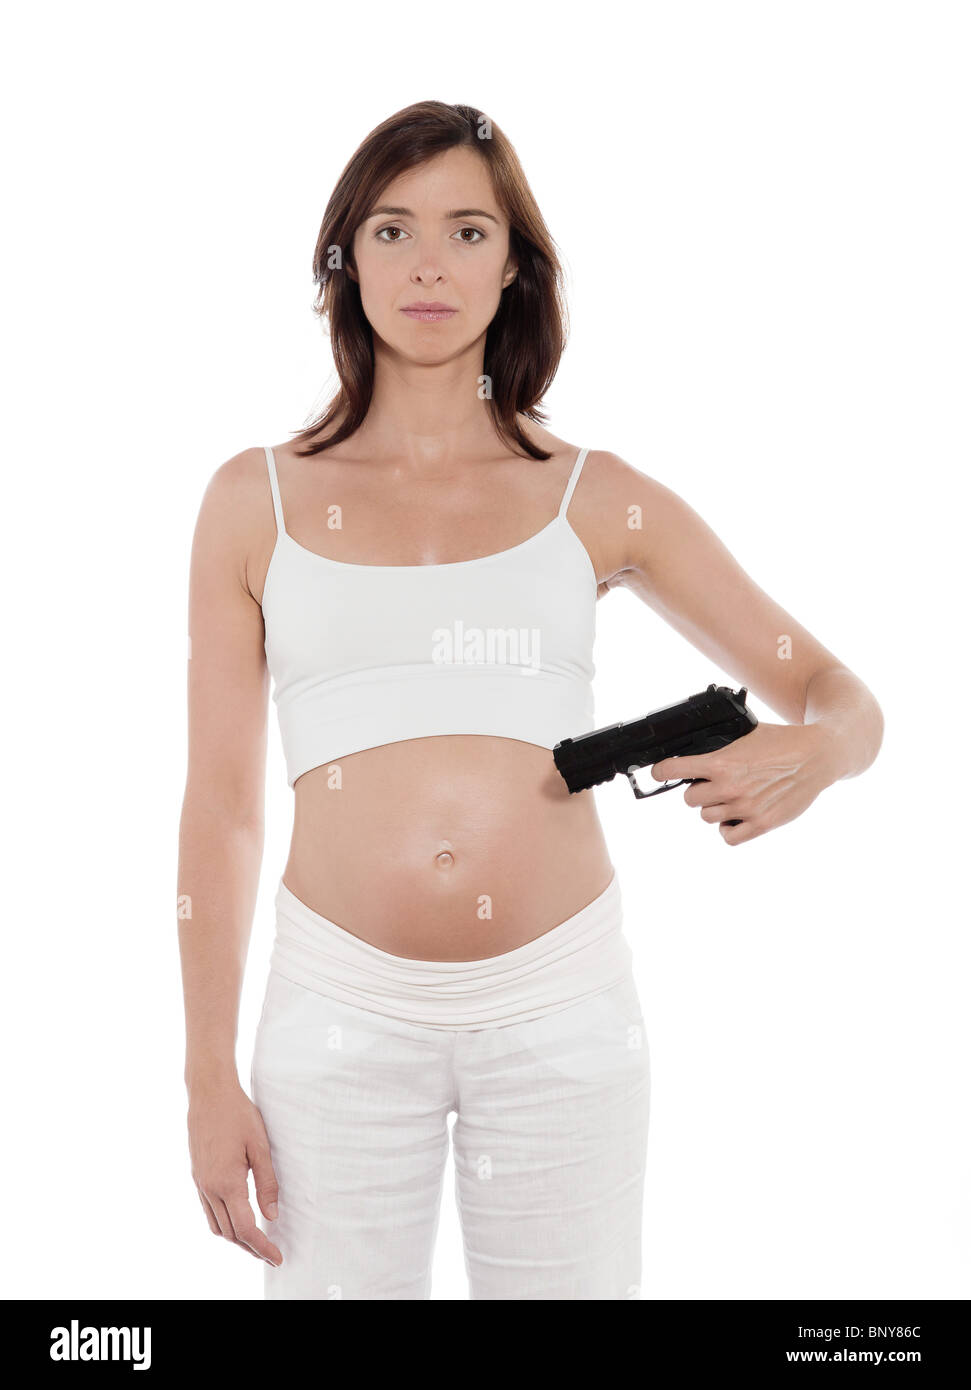 Incinta donna caucasica ritratto pistola di puntamento sulla pancia aborto concetto studio isolato su sfondo bianco Foto Stock